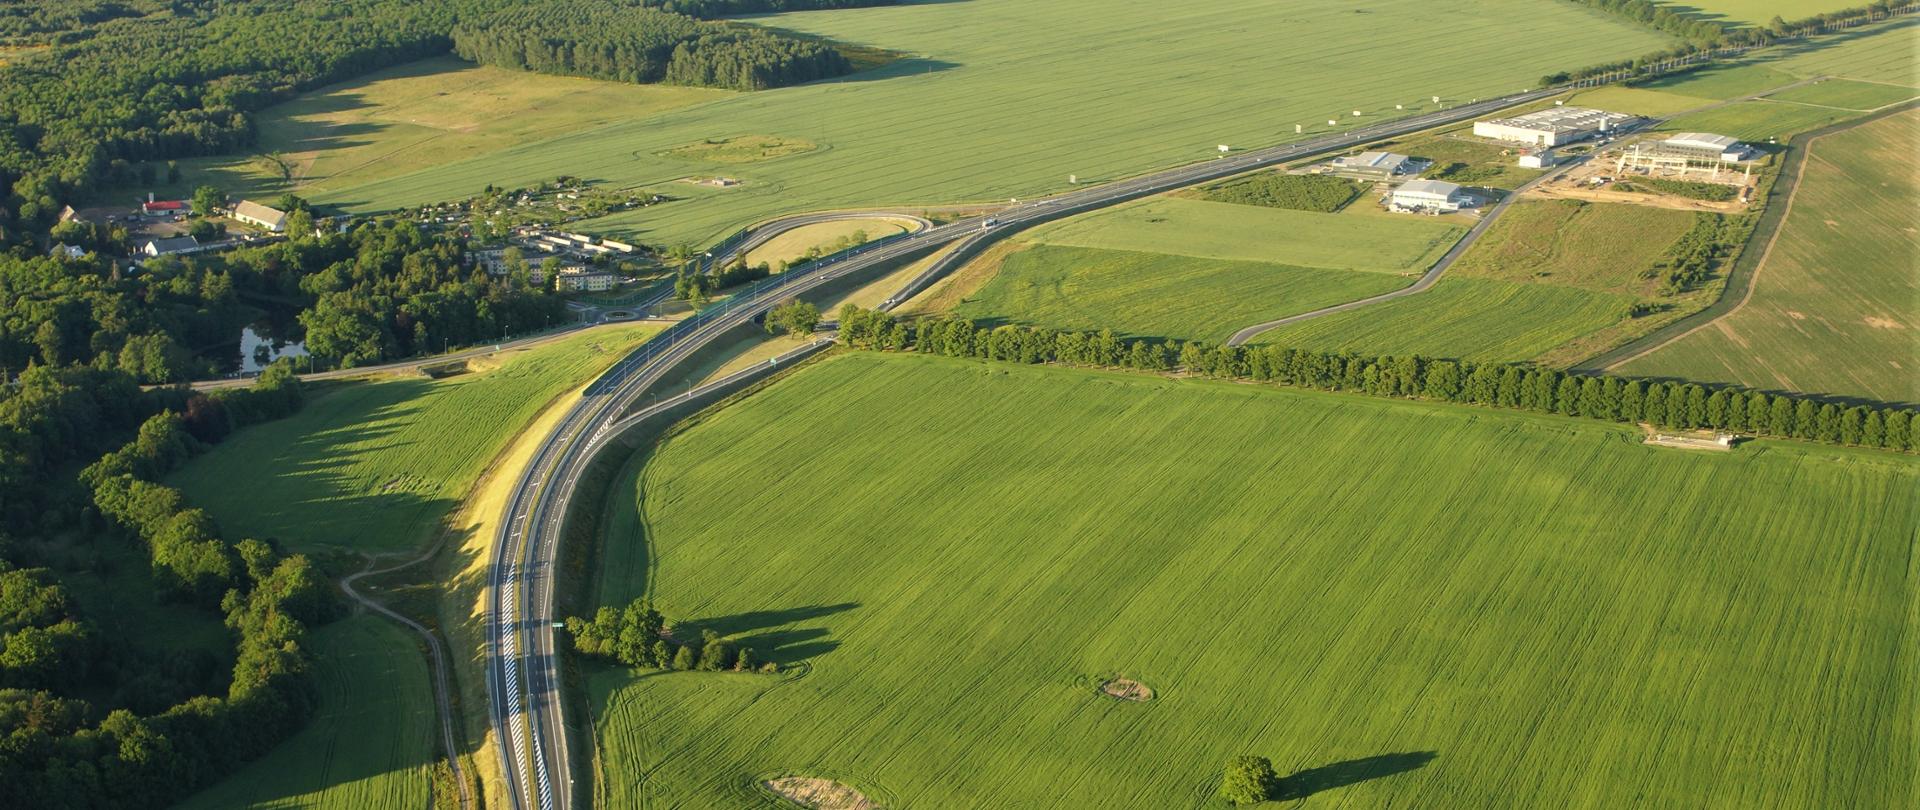 Zdjęcie przedstawia drogę ekspresową S6 w pobliżu węzła Redzikowo, gdzie rozpoczyna się inwestycja odc. S6 koniec obw. Słupska - Bobrowniki.